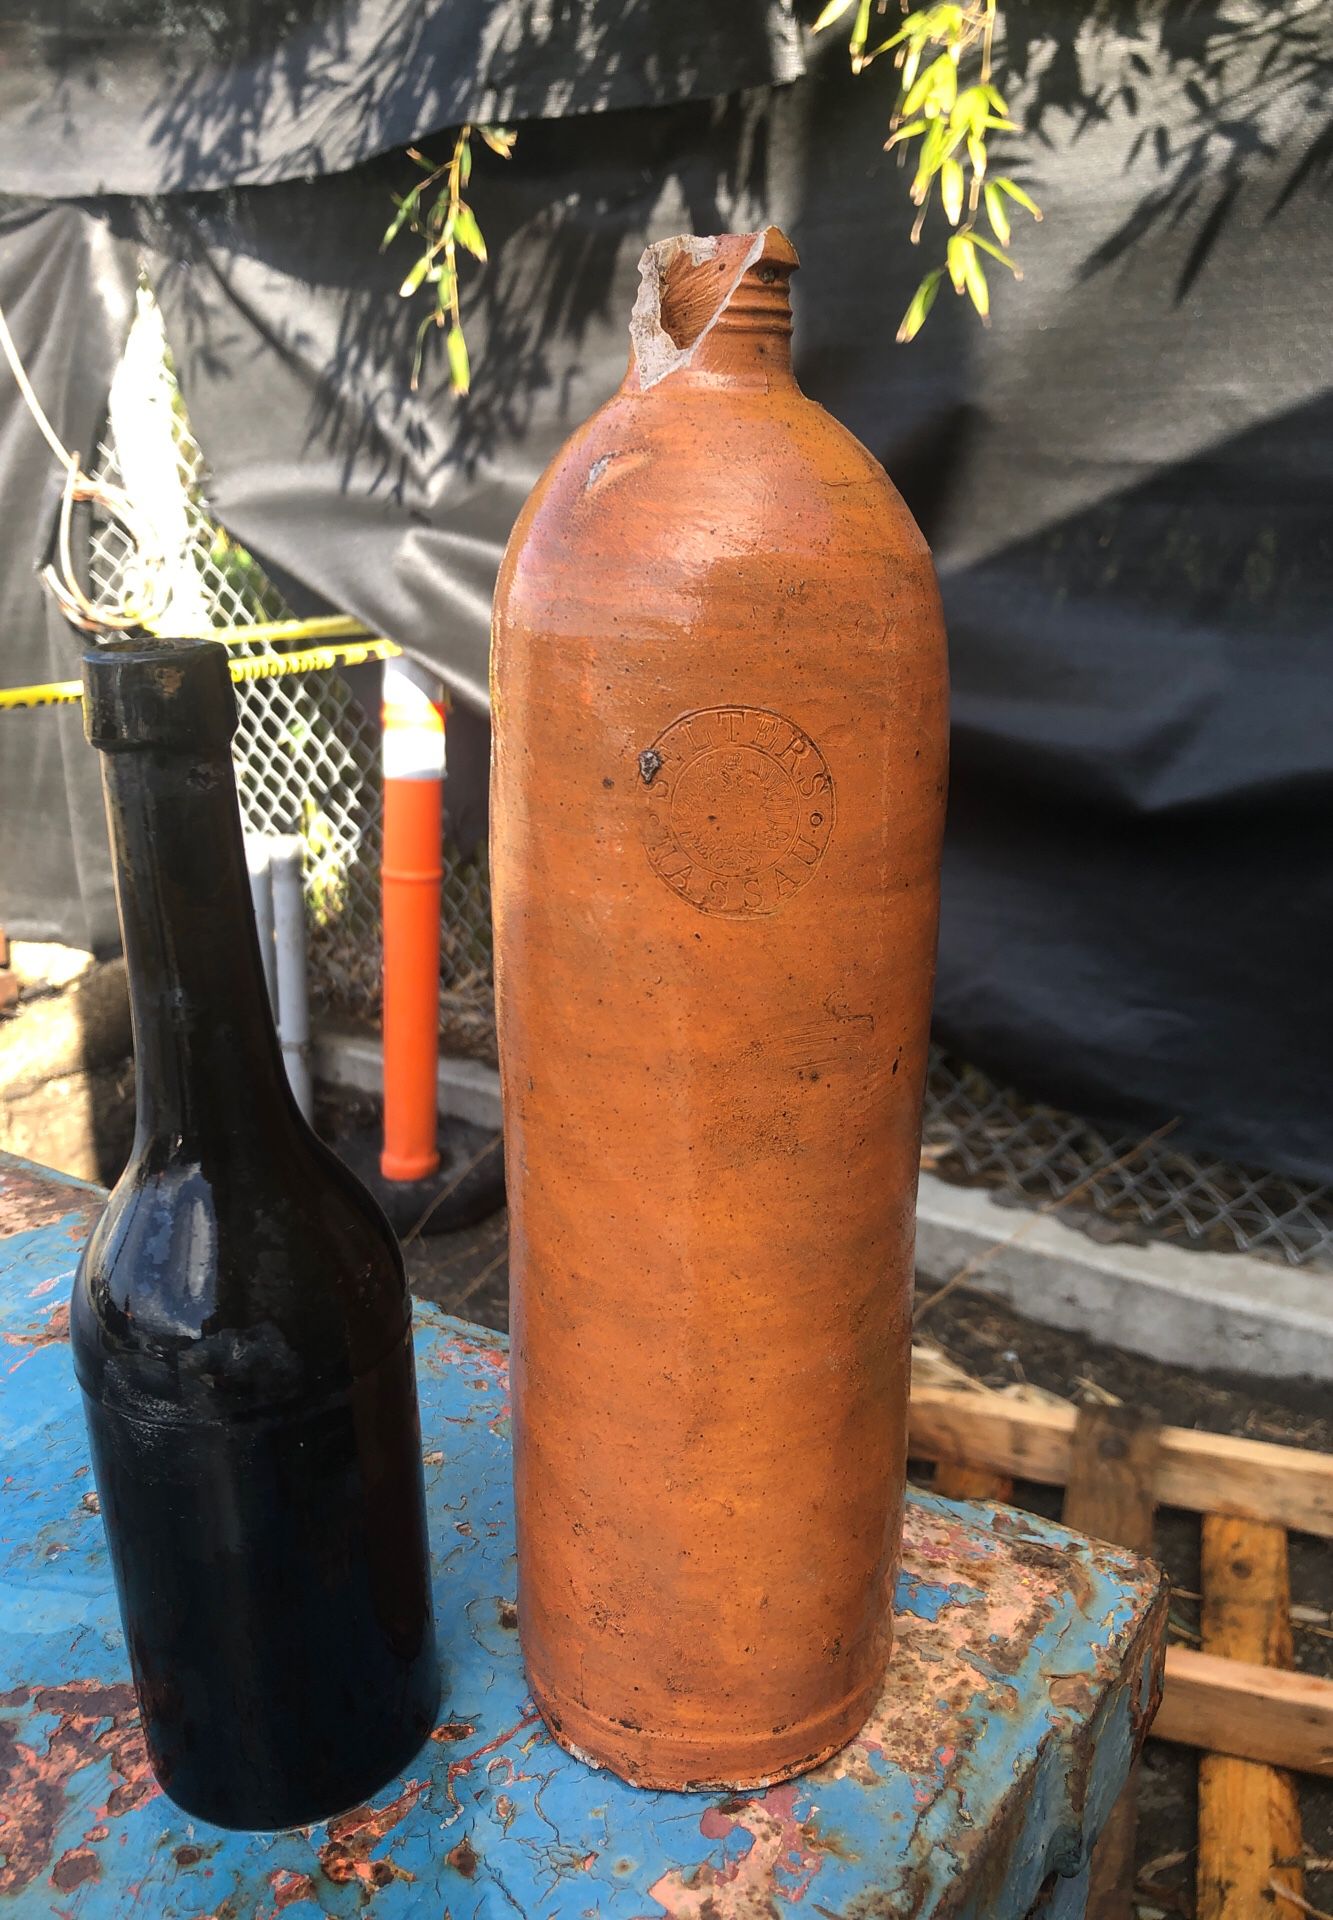 Antique bottle